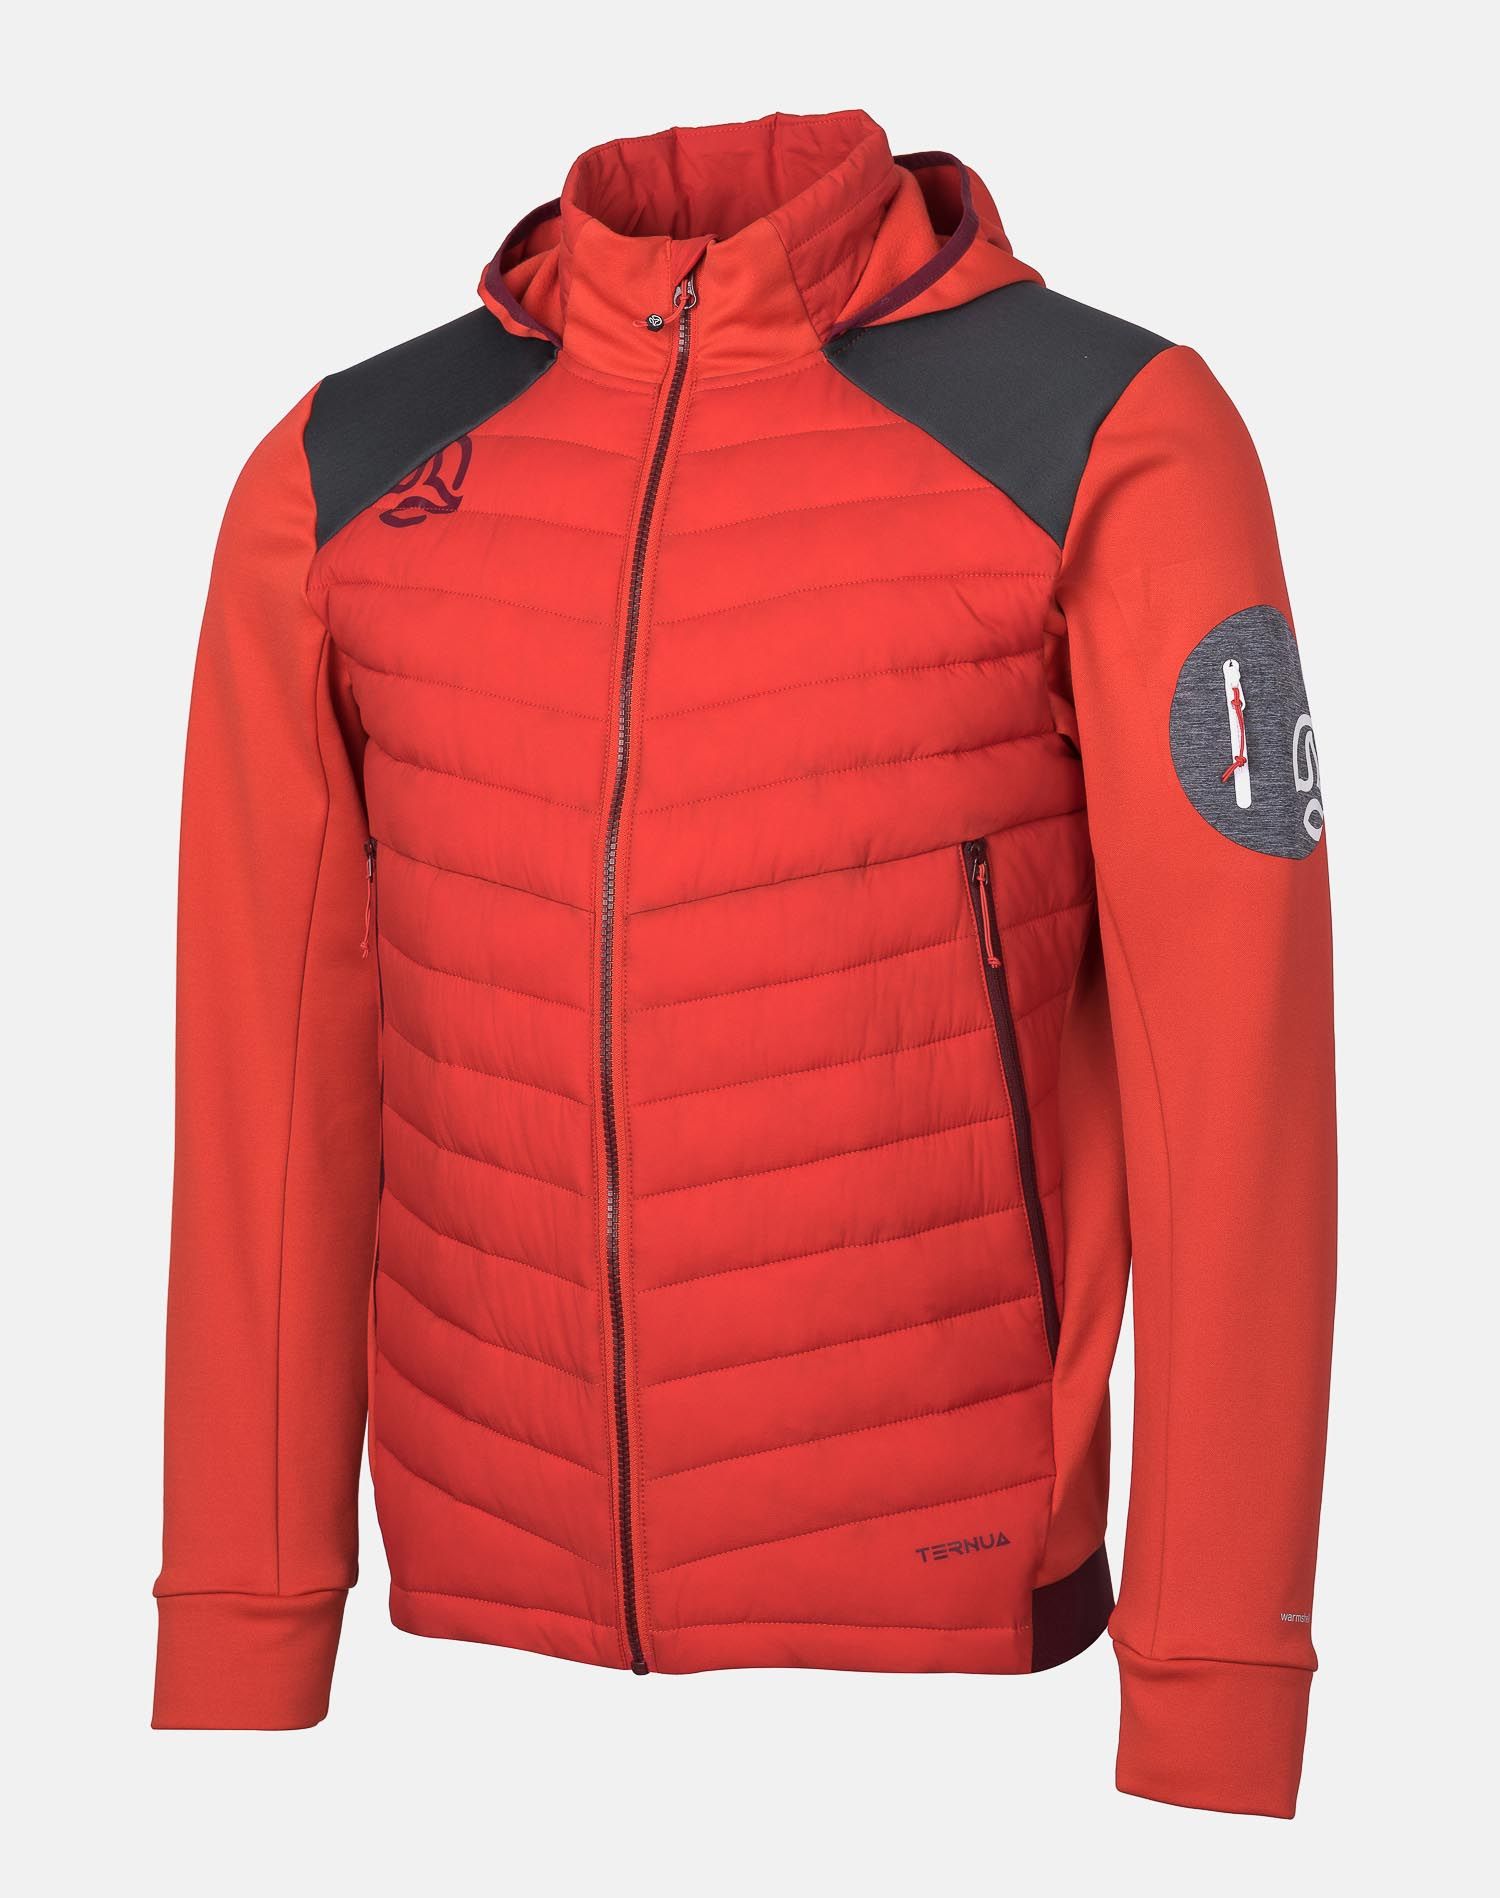 Спортивная куртка мужская Ternua Yukkon Hybrid Hood Jkt M красная L